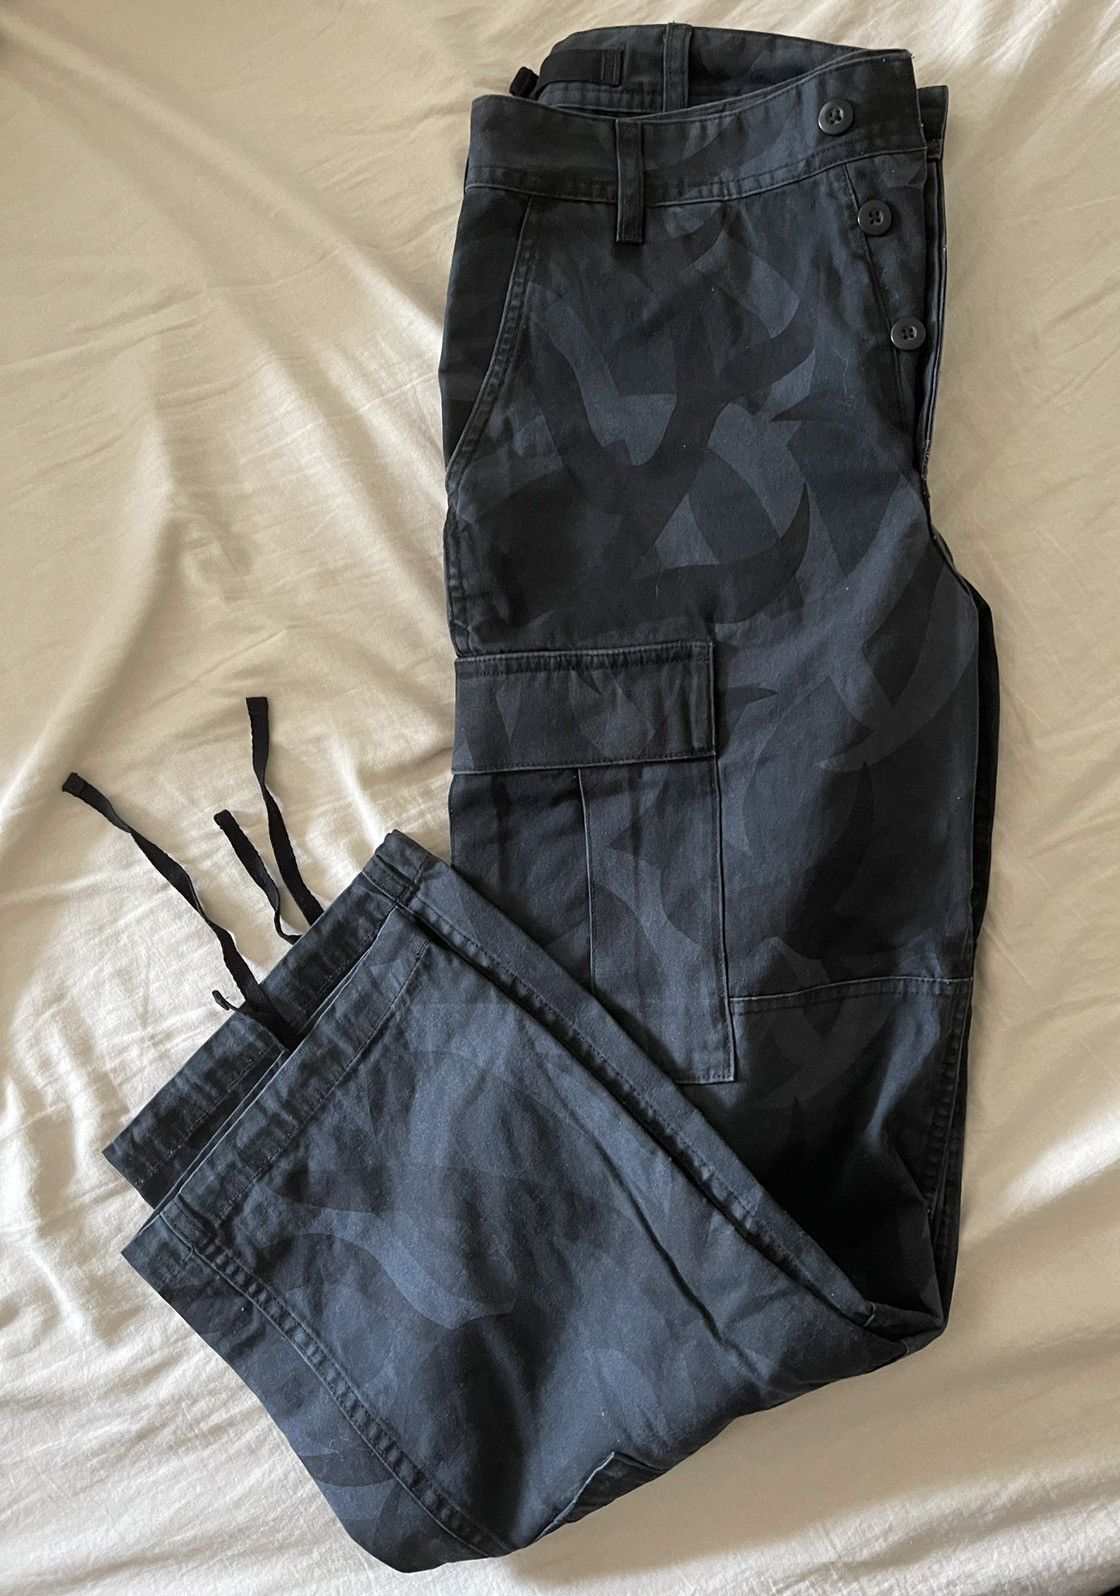 Supreme Supreme cargo pants black tribal camo | Grailed